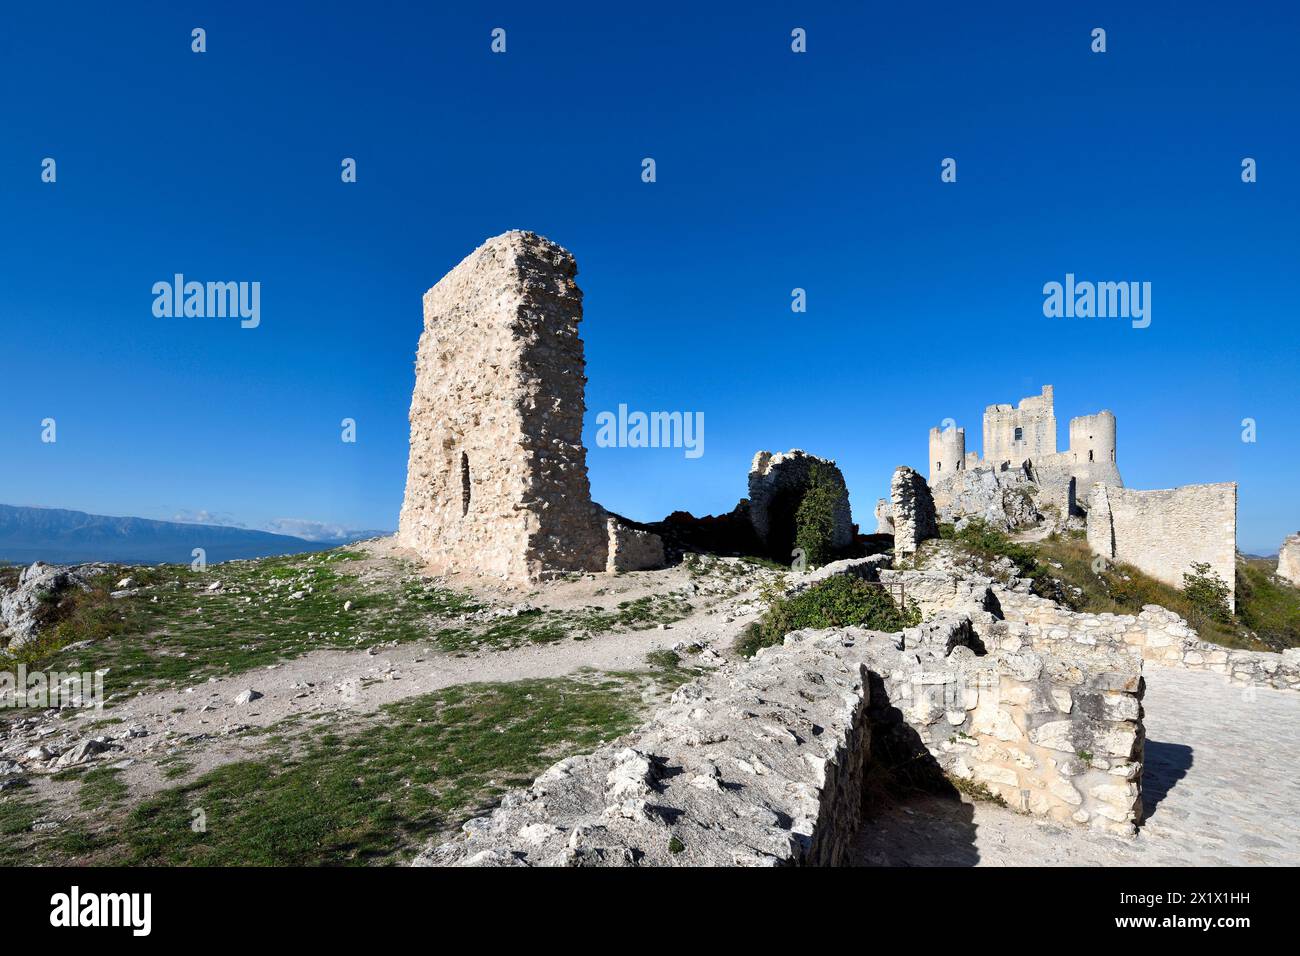 Rocca Calascio. Abruzzo. Italy Stock Photo